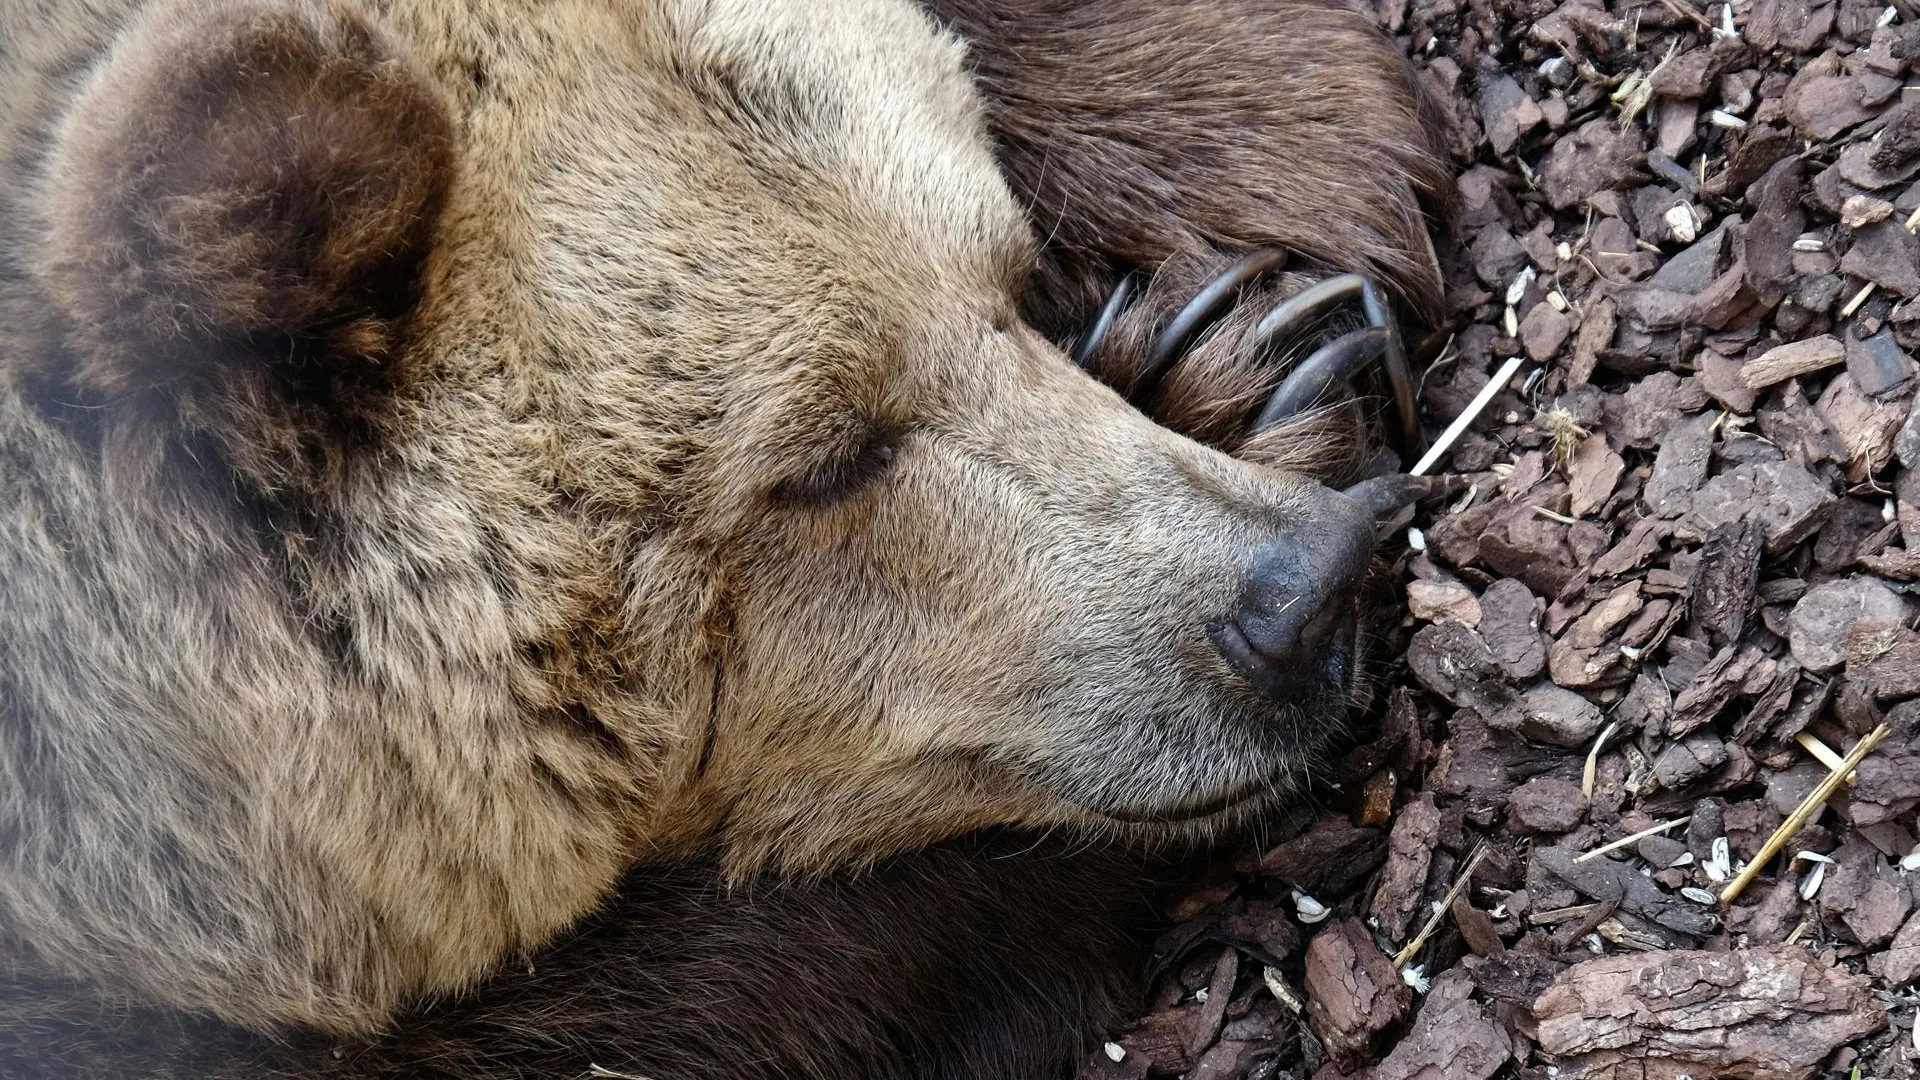 Хотел покормить, но не вышло: медведь набросился на мужчину в Мурманской области